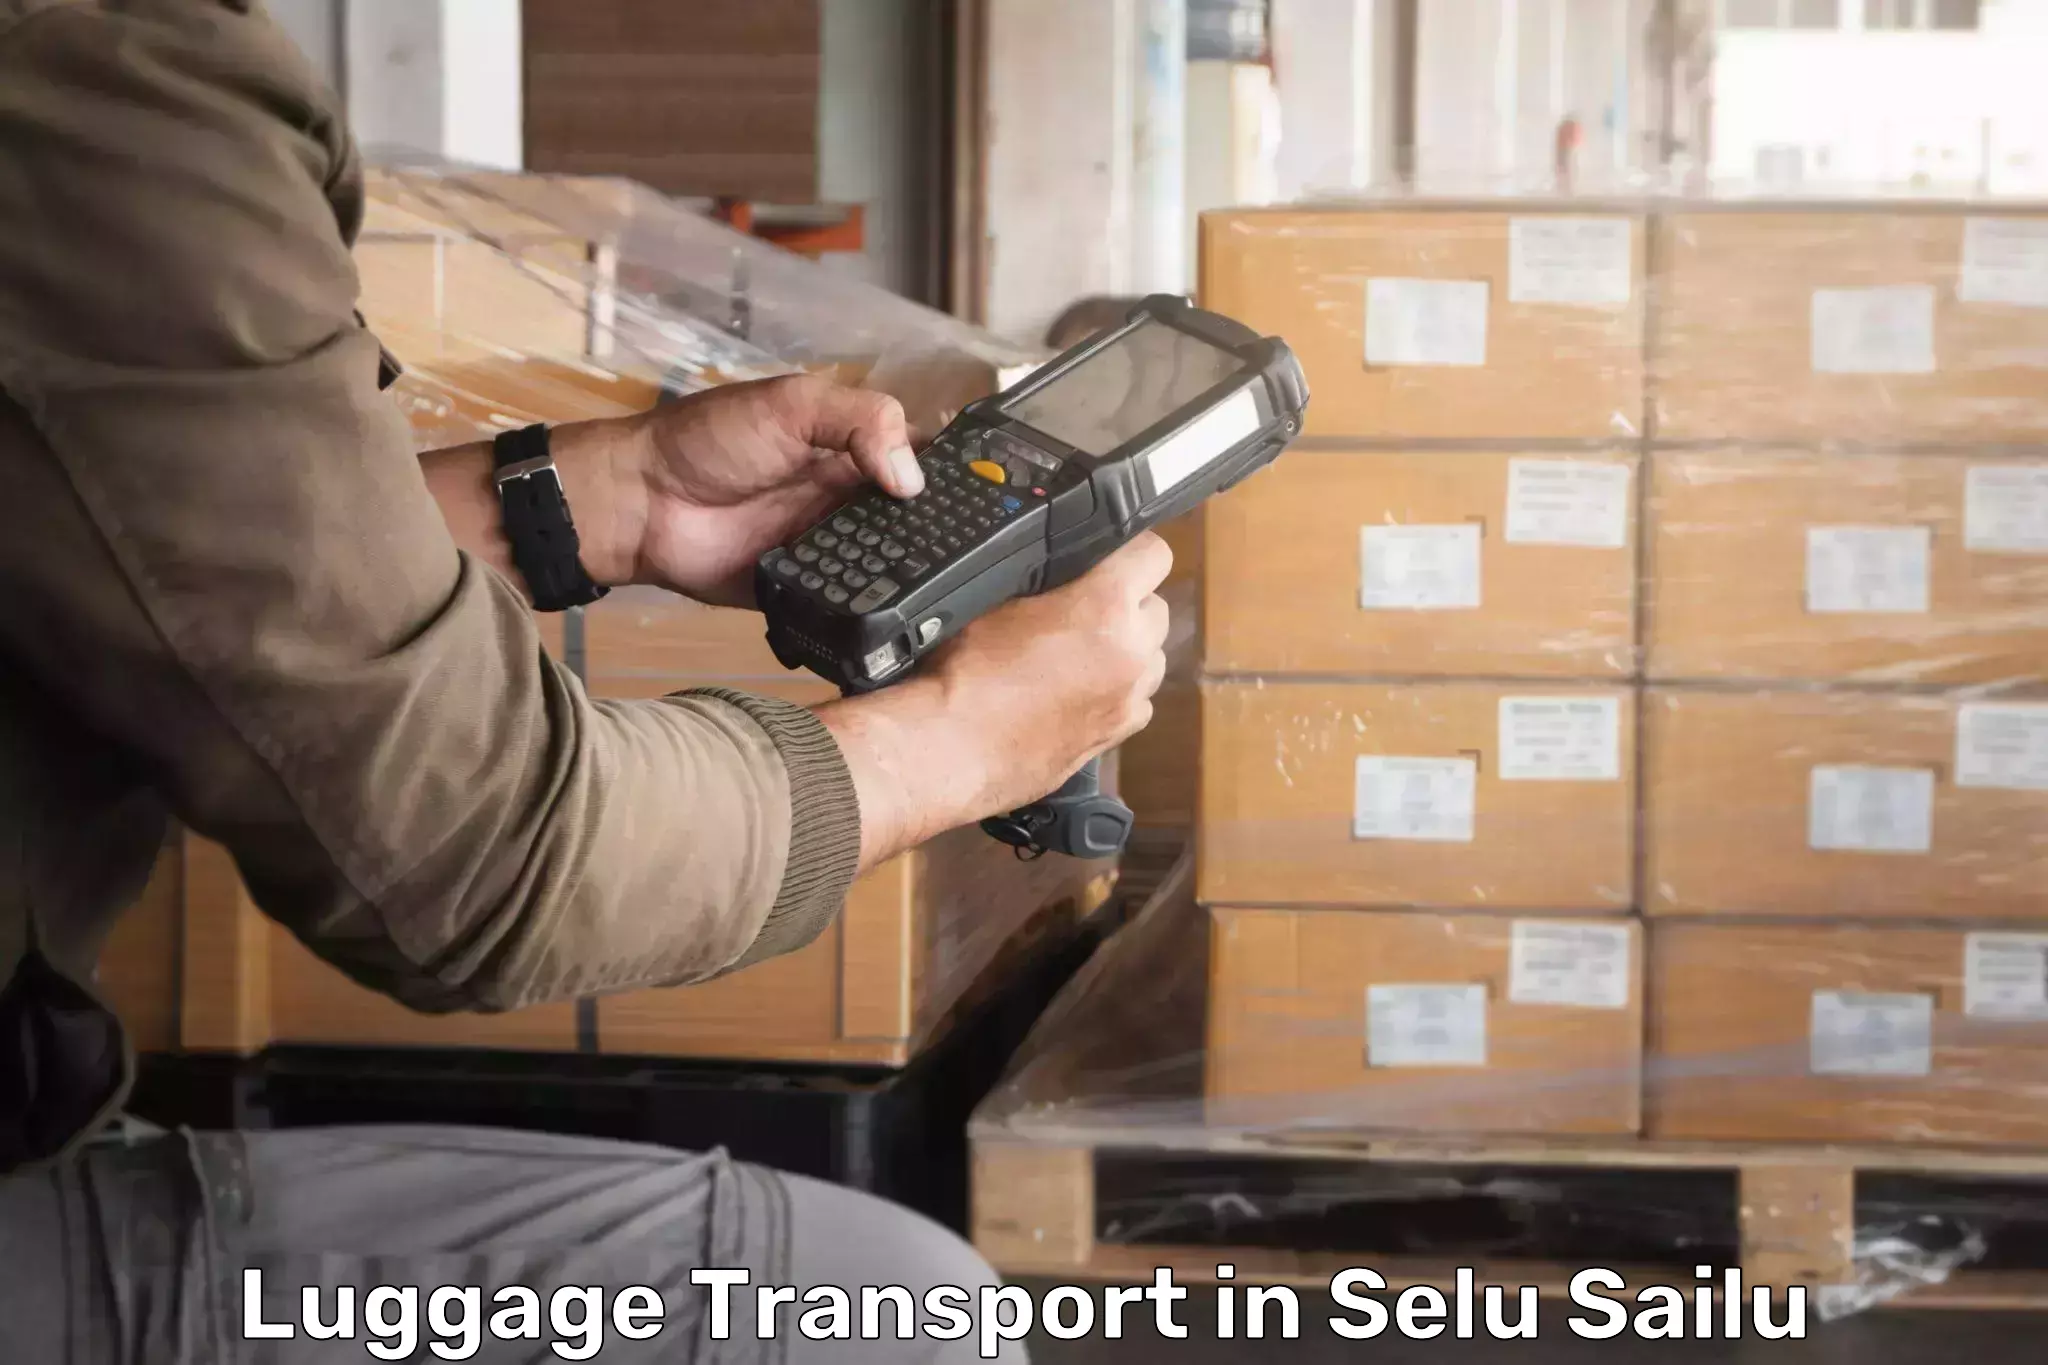 Luggage transport guidelines in Selu Sailu